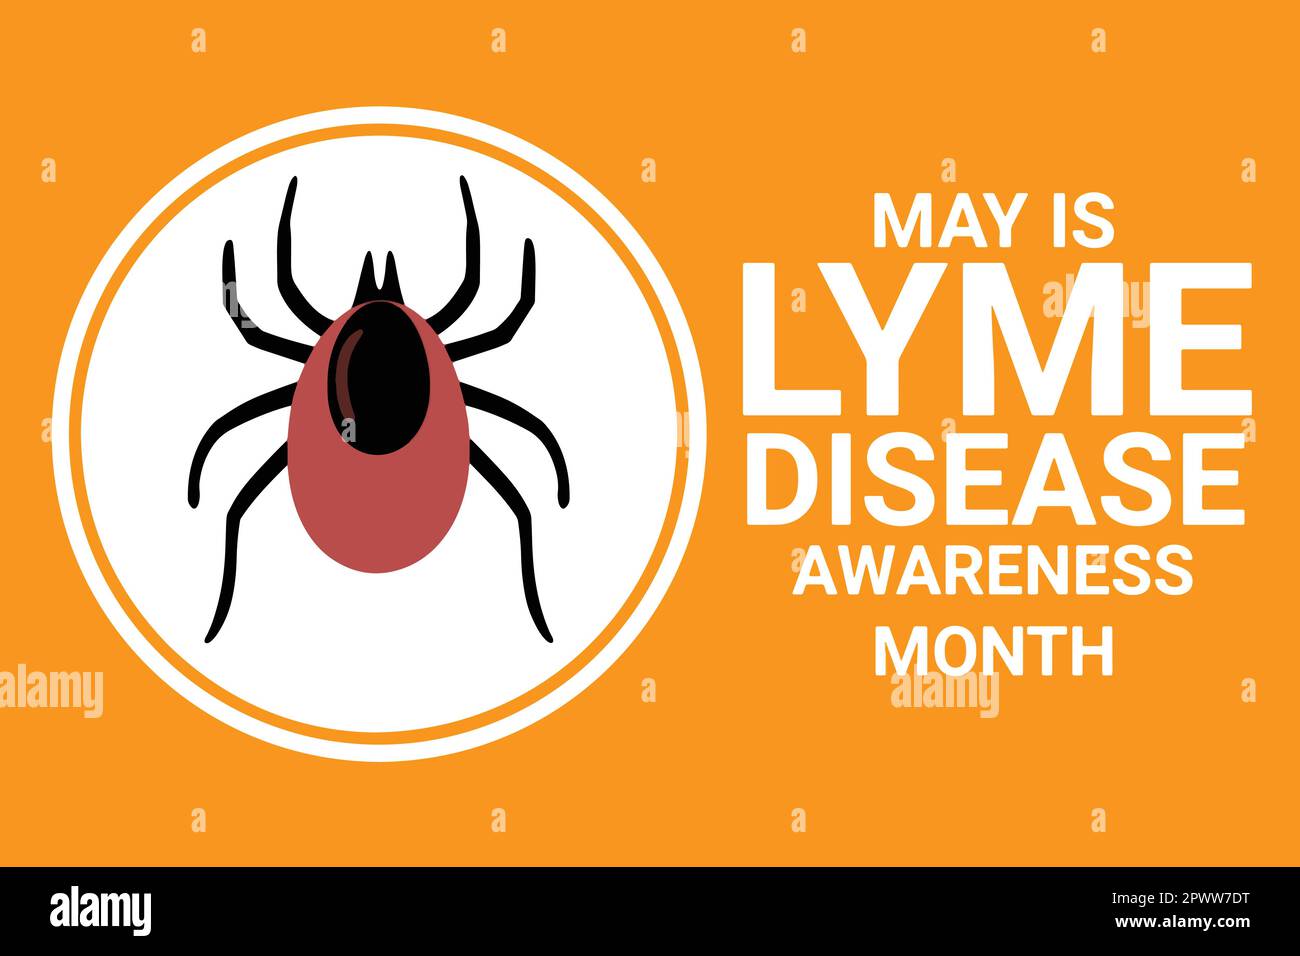 May ist Lyme-Borreliose Bewusstsein Monat. Vektorabbildung für Hintergrund, Banner, Karte, Poster mit Häkchen. Stock Vektor